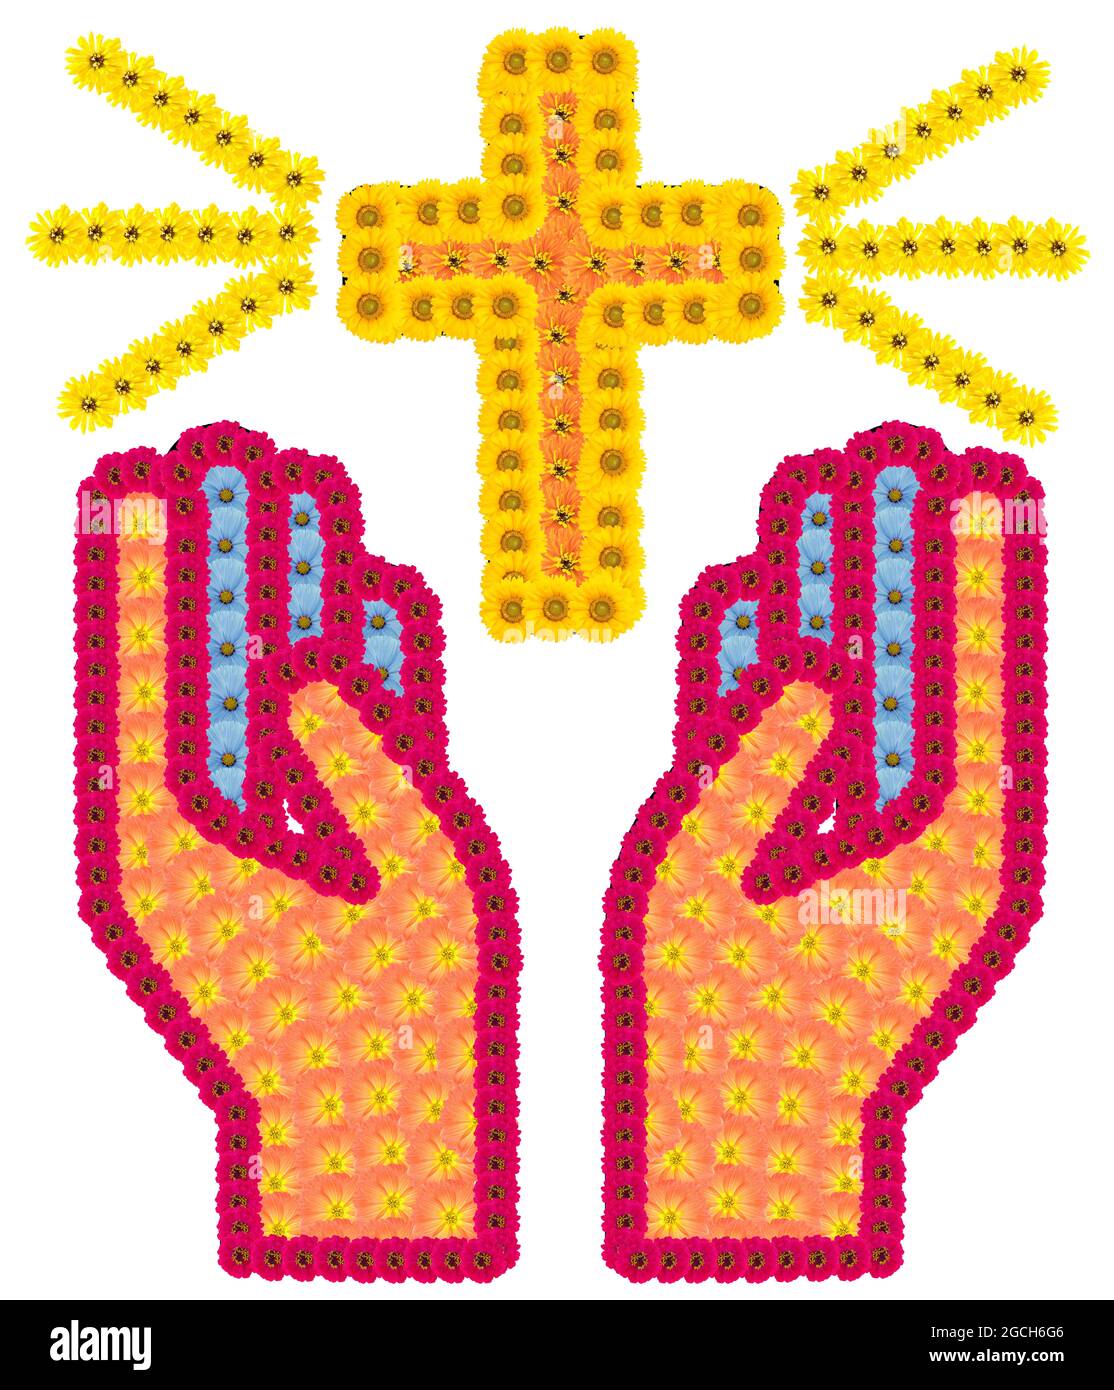 Die Hände eines Gläubigen Beters und das heilige goldene Kreuz. Isolierte handgemachte Fotocollage Stockfoto